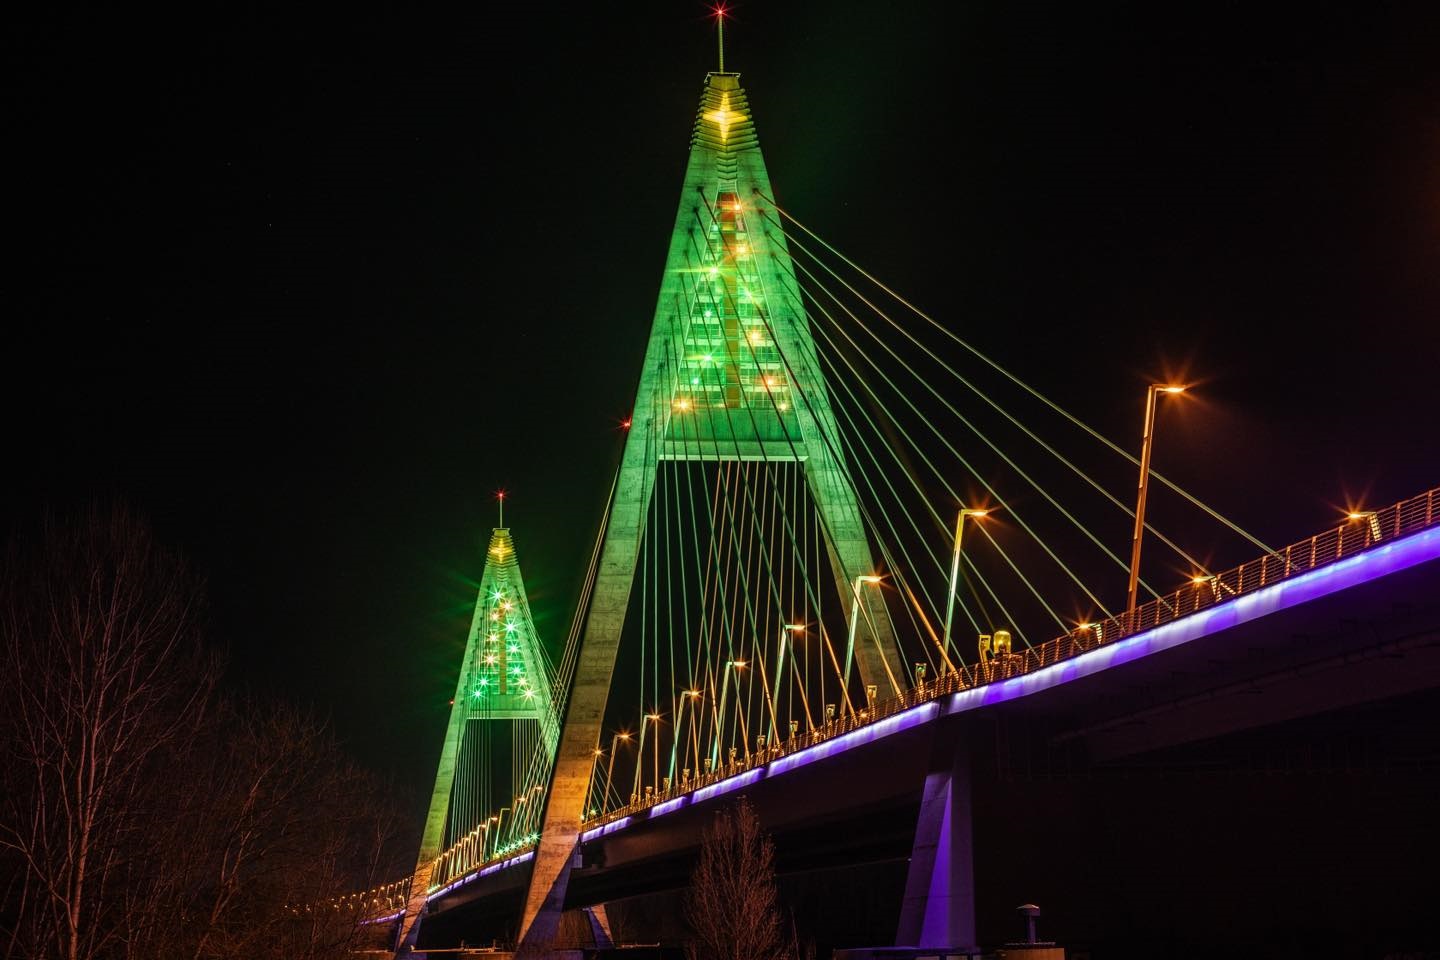 Óriási karácsonyfává változtak a Megyeri híd pilonjai – fotók